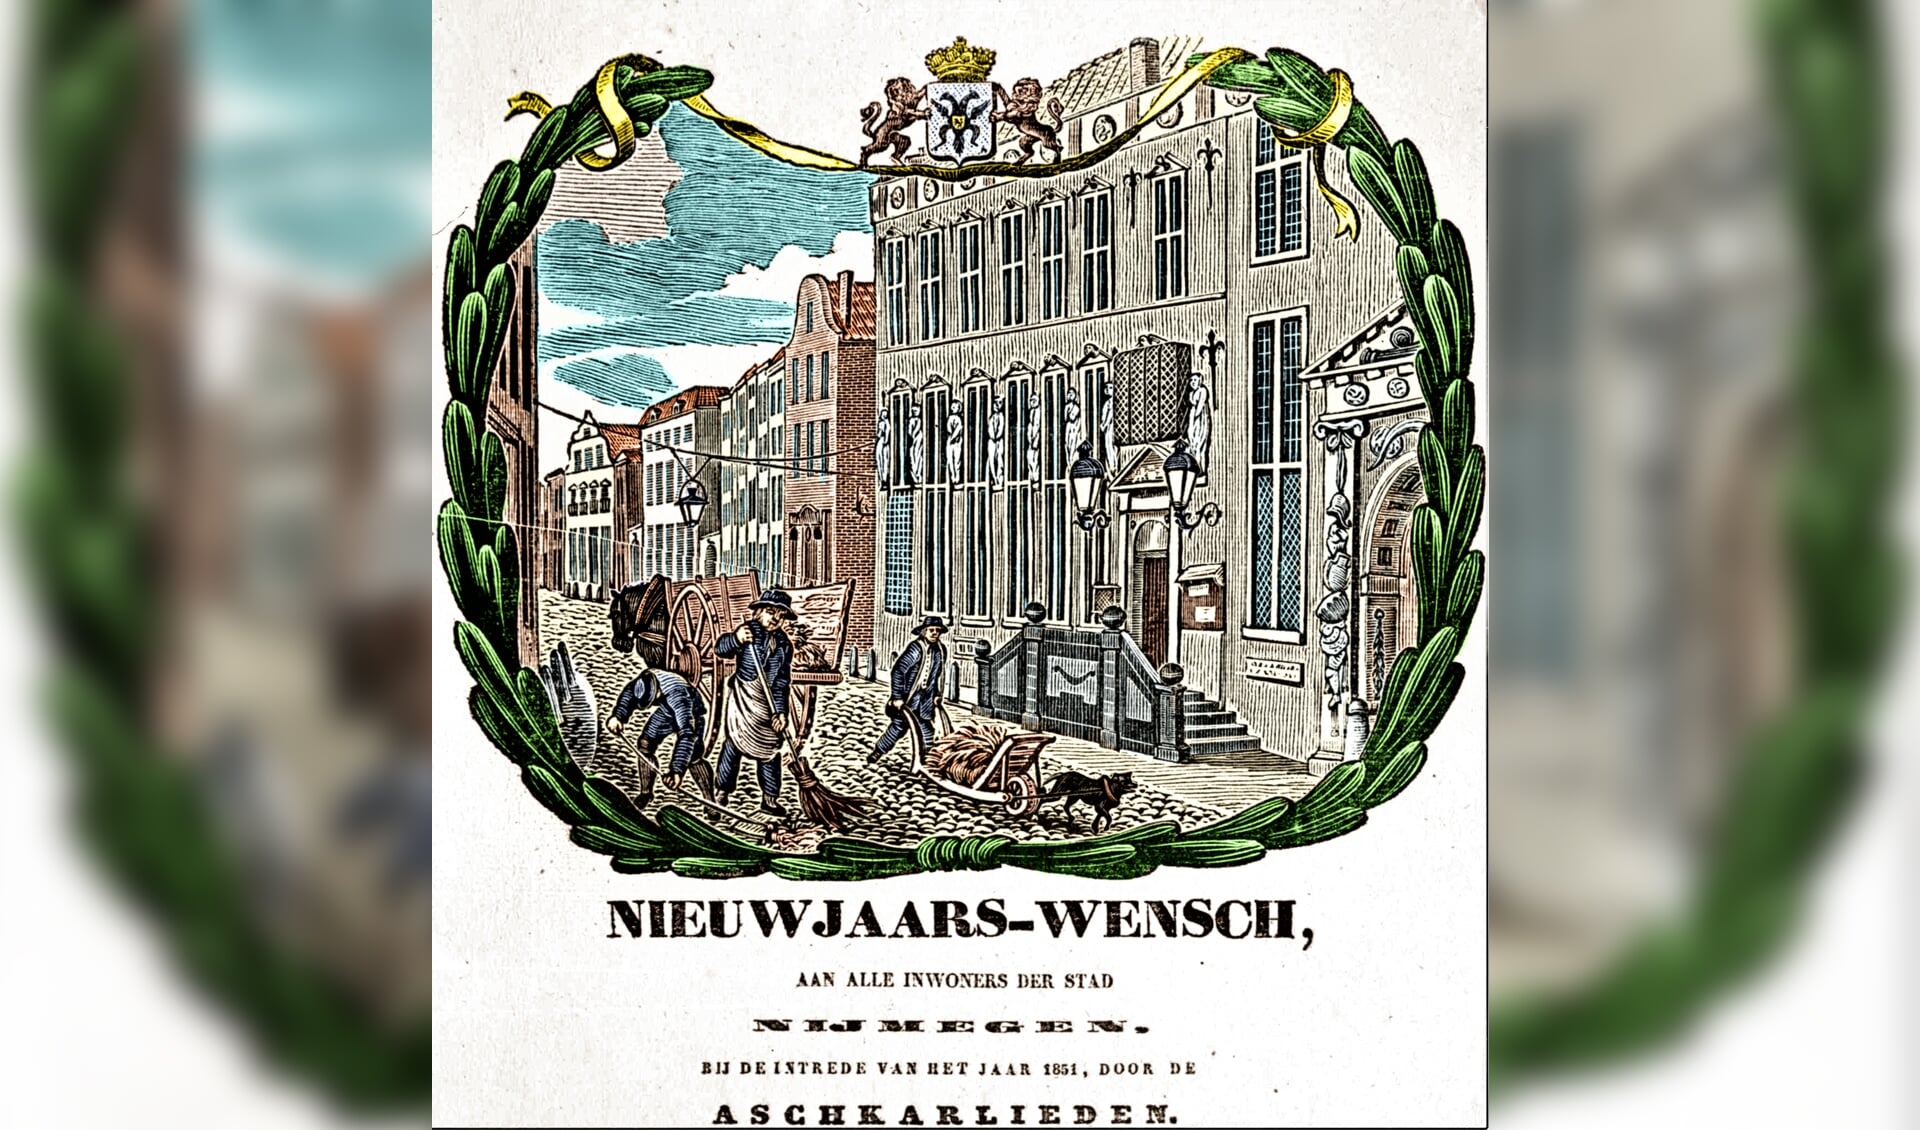 Nieuwjaars-wensch van de Aschkarlieden voor nieuwjaar 1851.